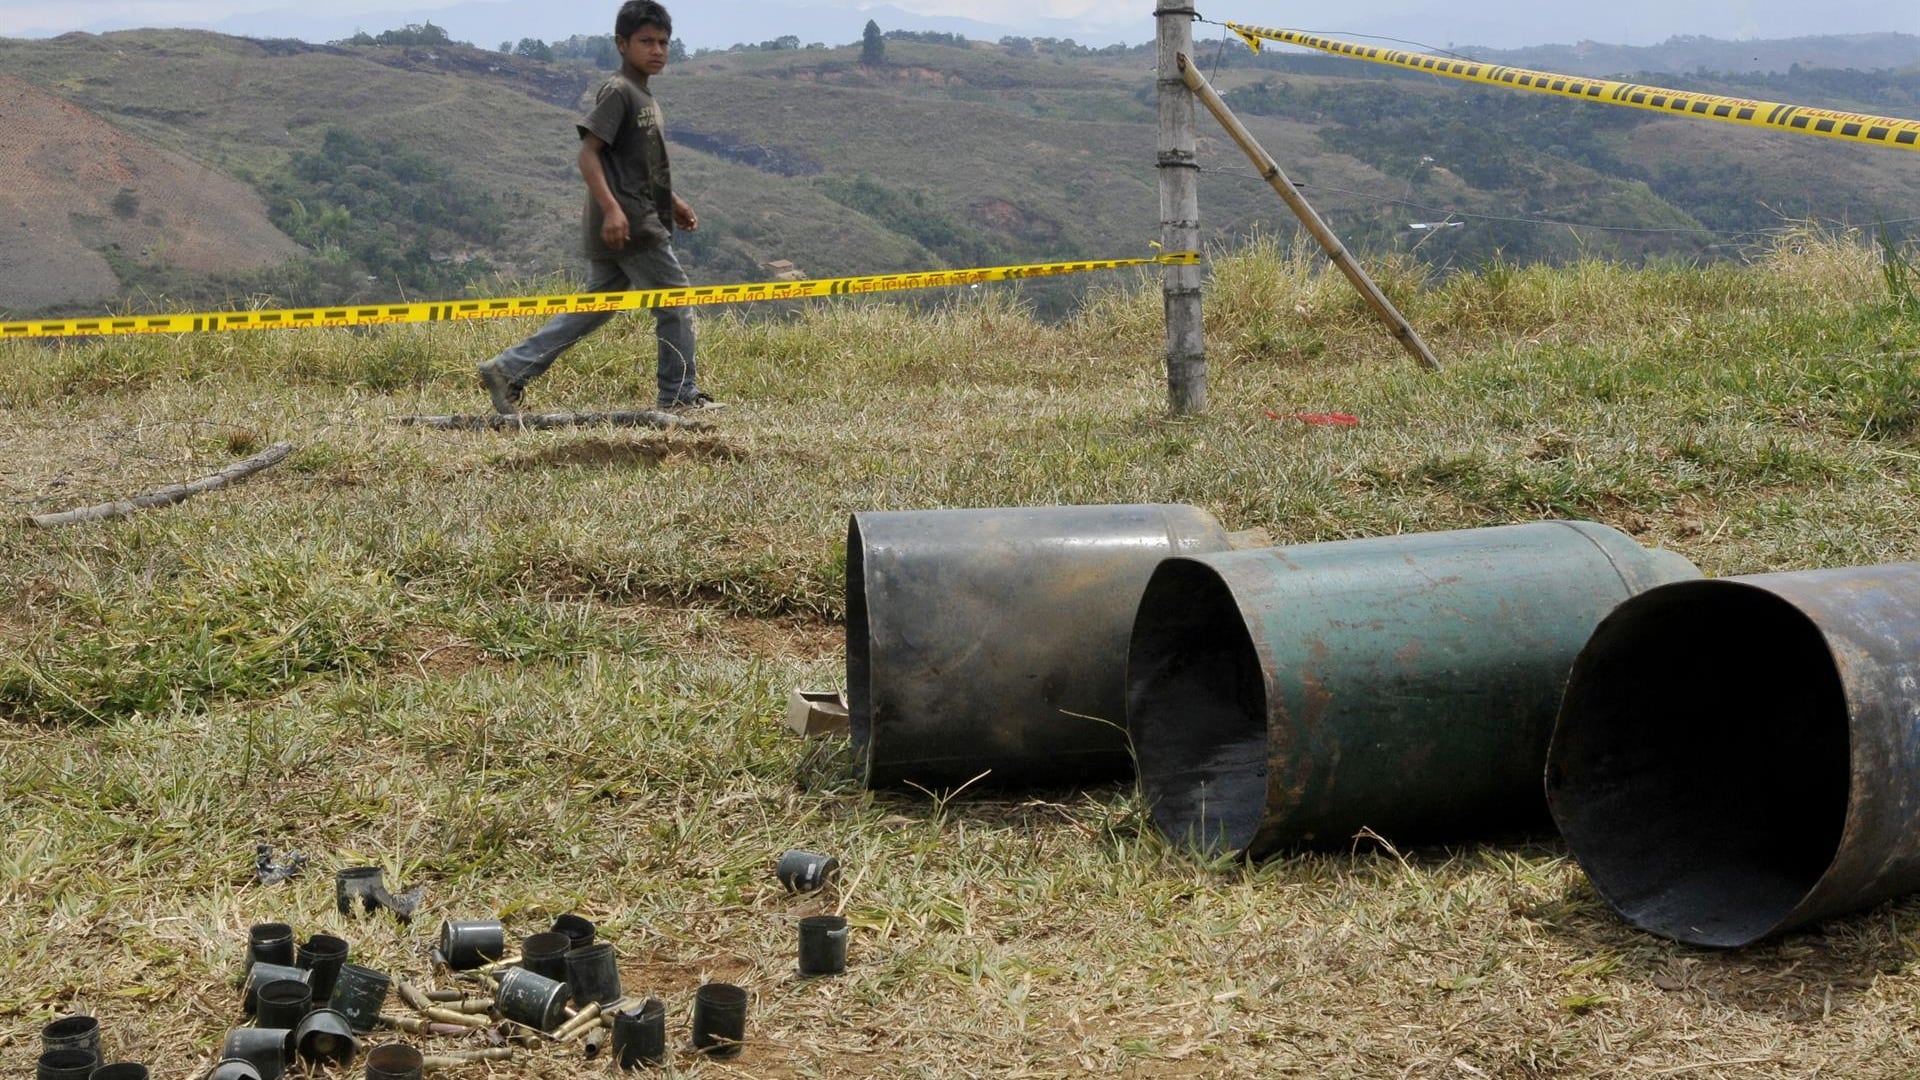 Un niño camina junto a unos cilindros bomba encontrados en el resguardo indígena de Las Mercedes hoy, sábado 11 de agosto de 2012, en Caldono, Cauca (Colombia).